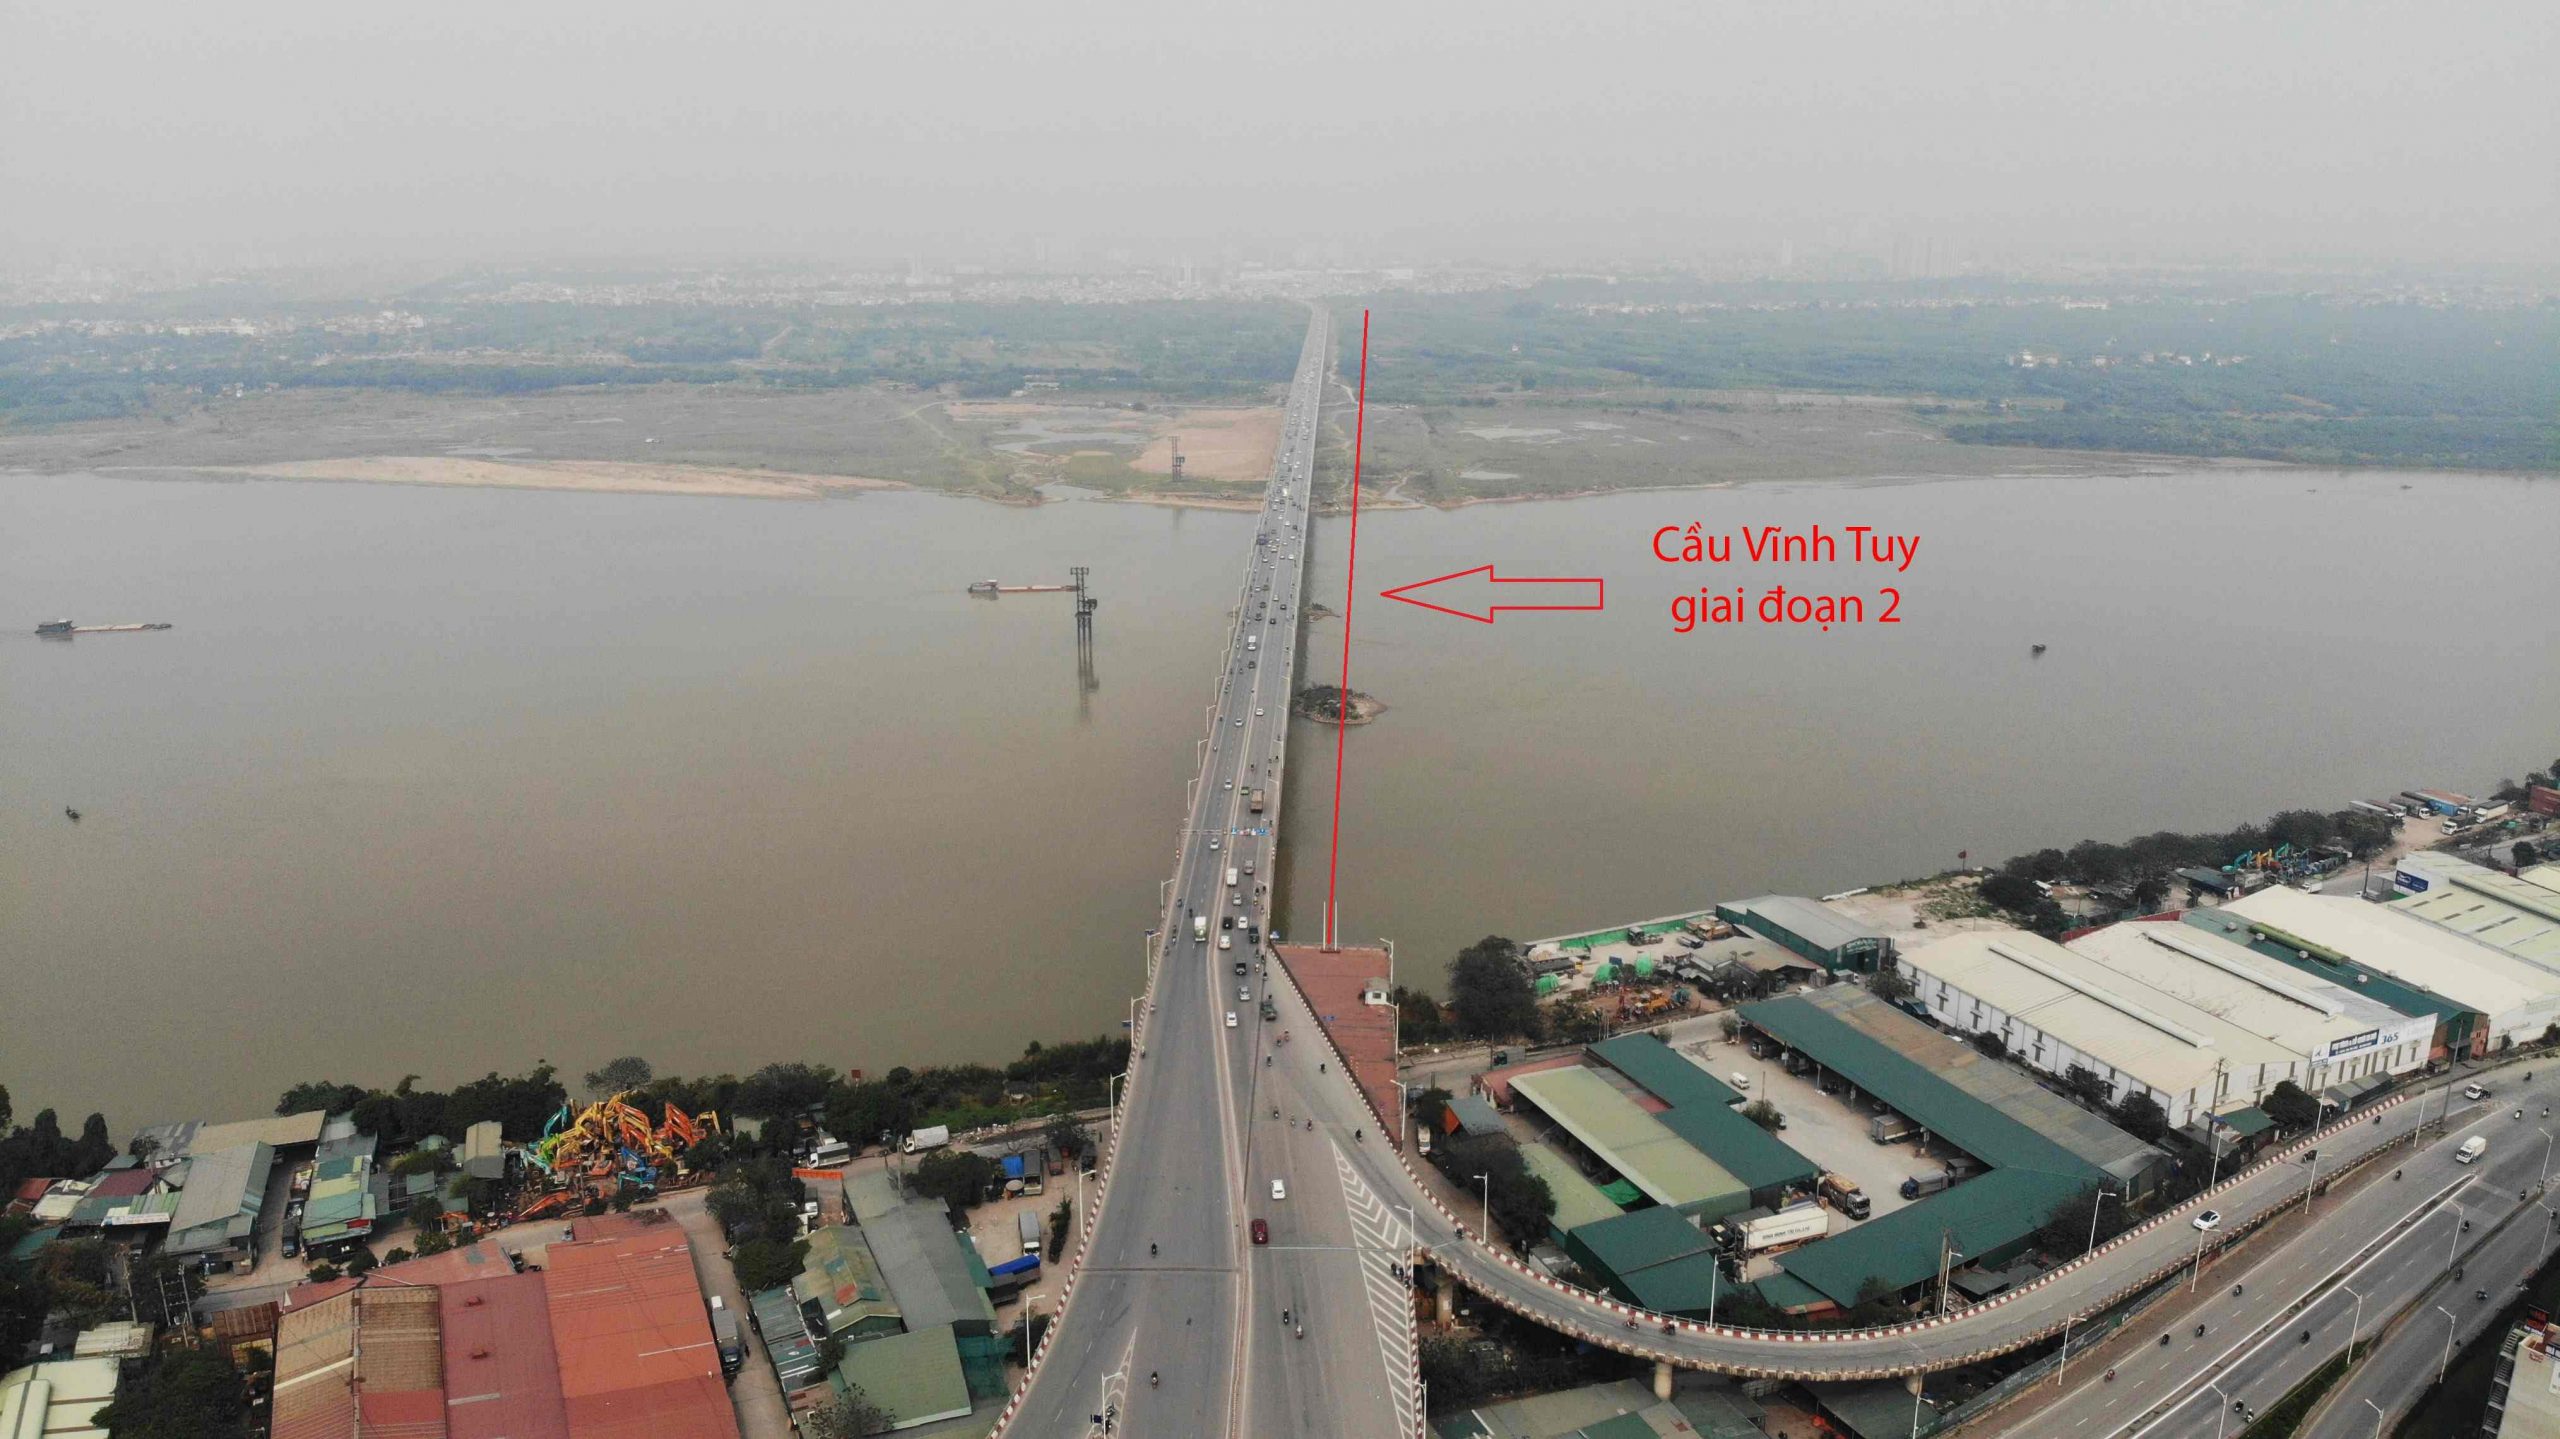 Dự án xây cầu Vĩnh Tuy thứ hai bắc qua sông Hồng với tổng đầu tư 2.540 tỷ đồng vói 4 làn xe